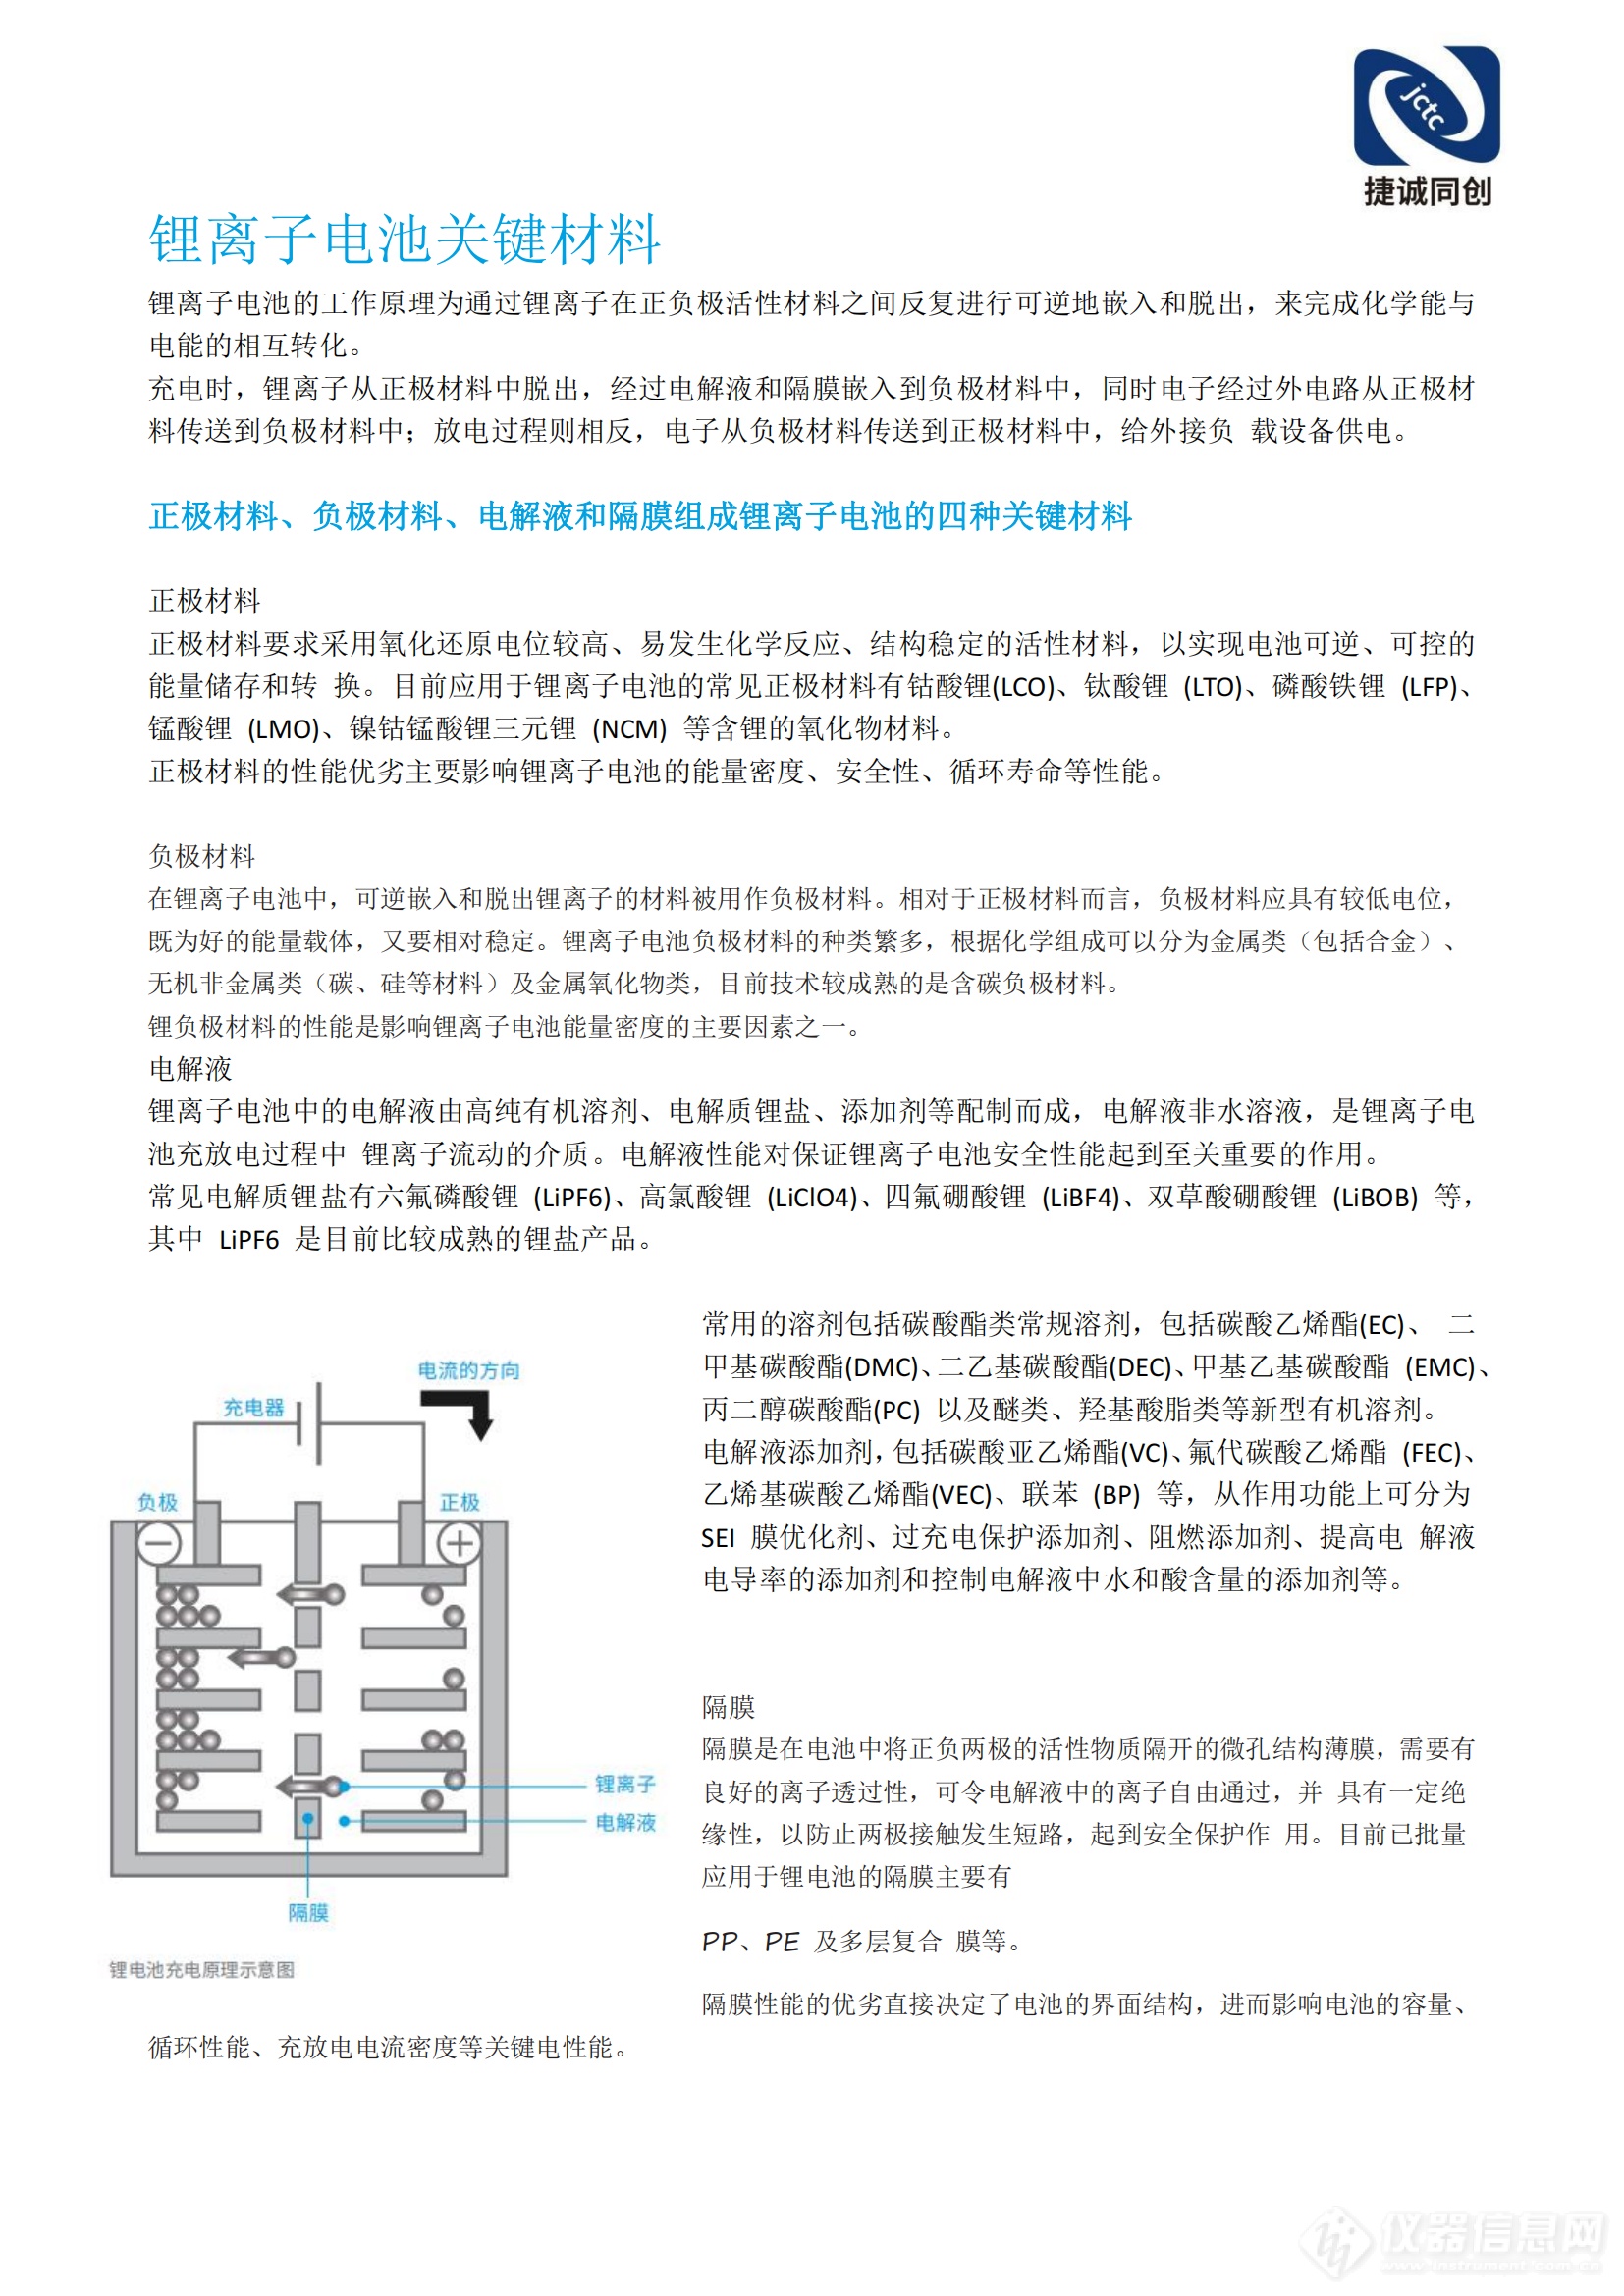 北京捷诚同创科技有限公司锂电池解决方案(2)_02.png